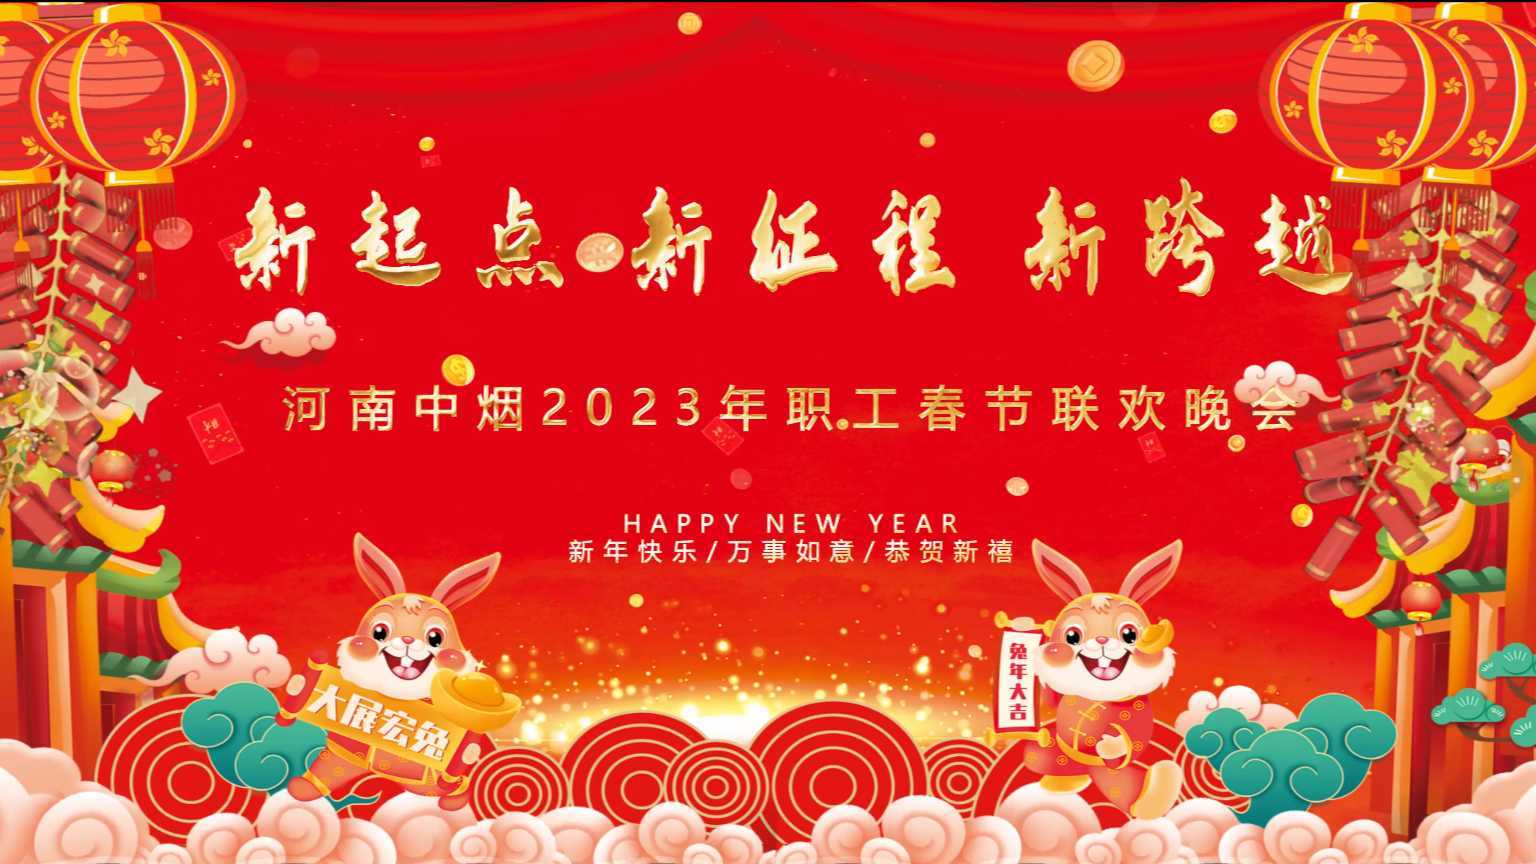 河南中烟工业有限责任公司2023年春节联欢晚会